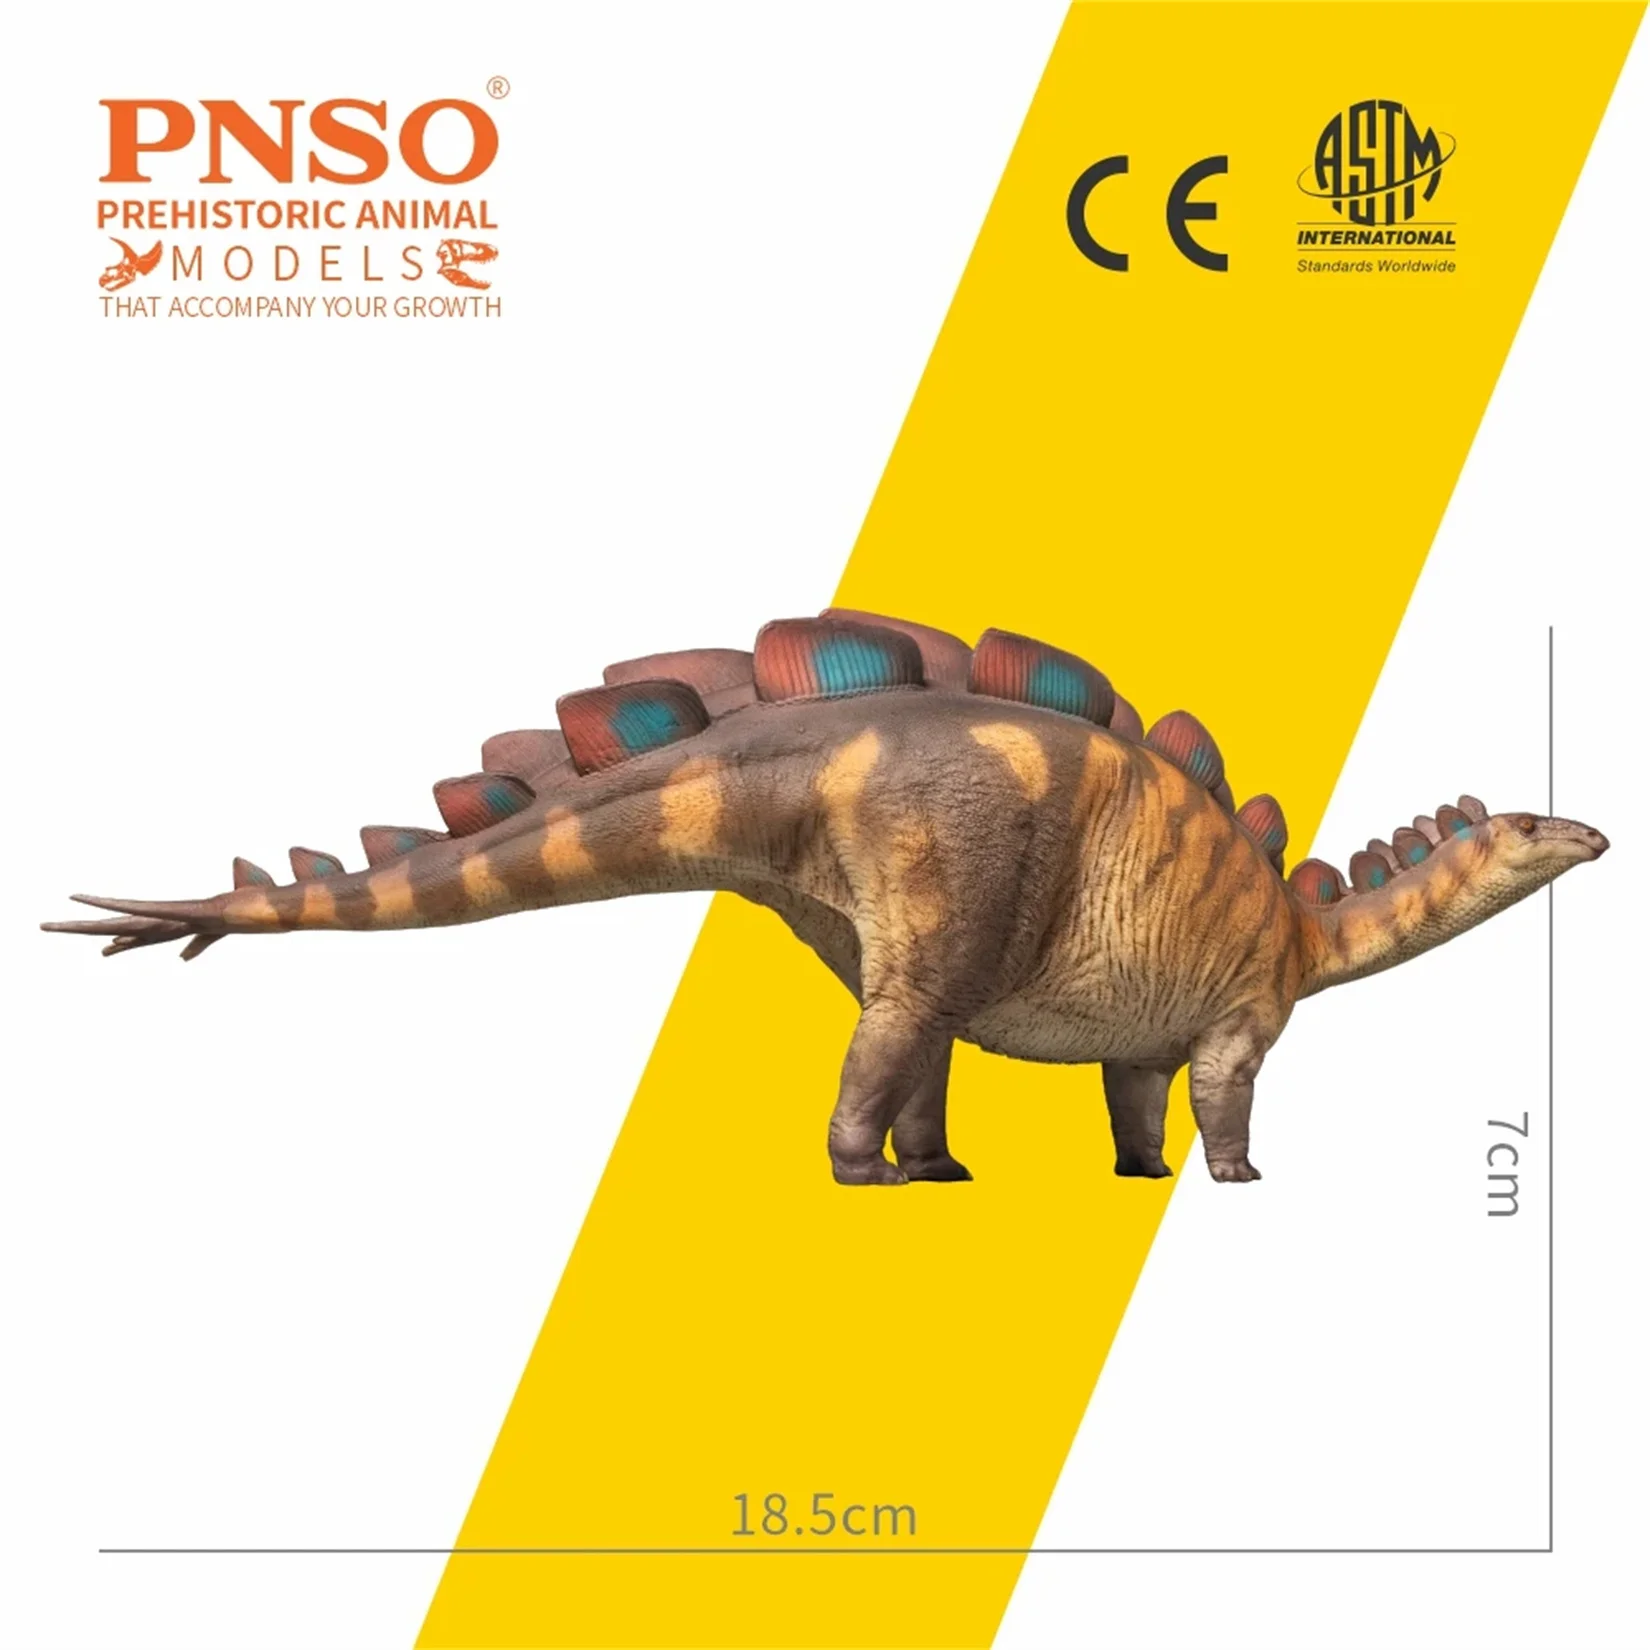 PNSO 82 Wuerhosaurus Xilin Model Stegosauridae dinozaur prehistoryczna kolekcja klimatyczna dekoracja zwierząt posąg naukowy